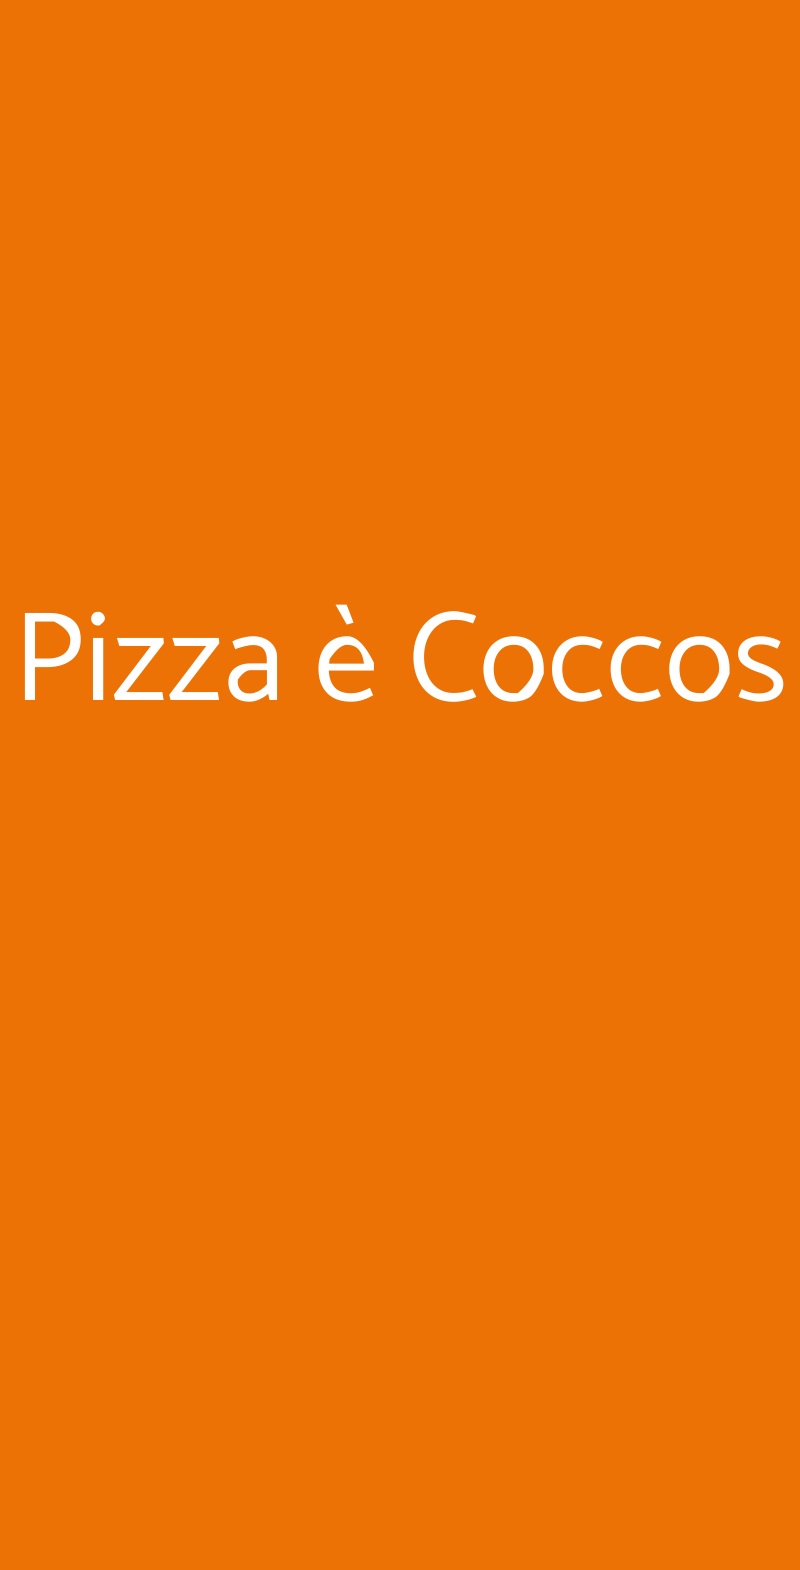 Pizza è Coccos Napoli menù 1 pagina